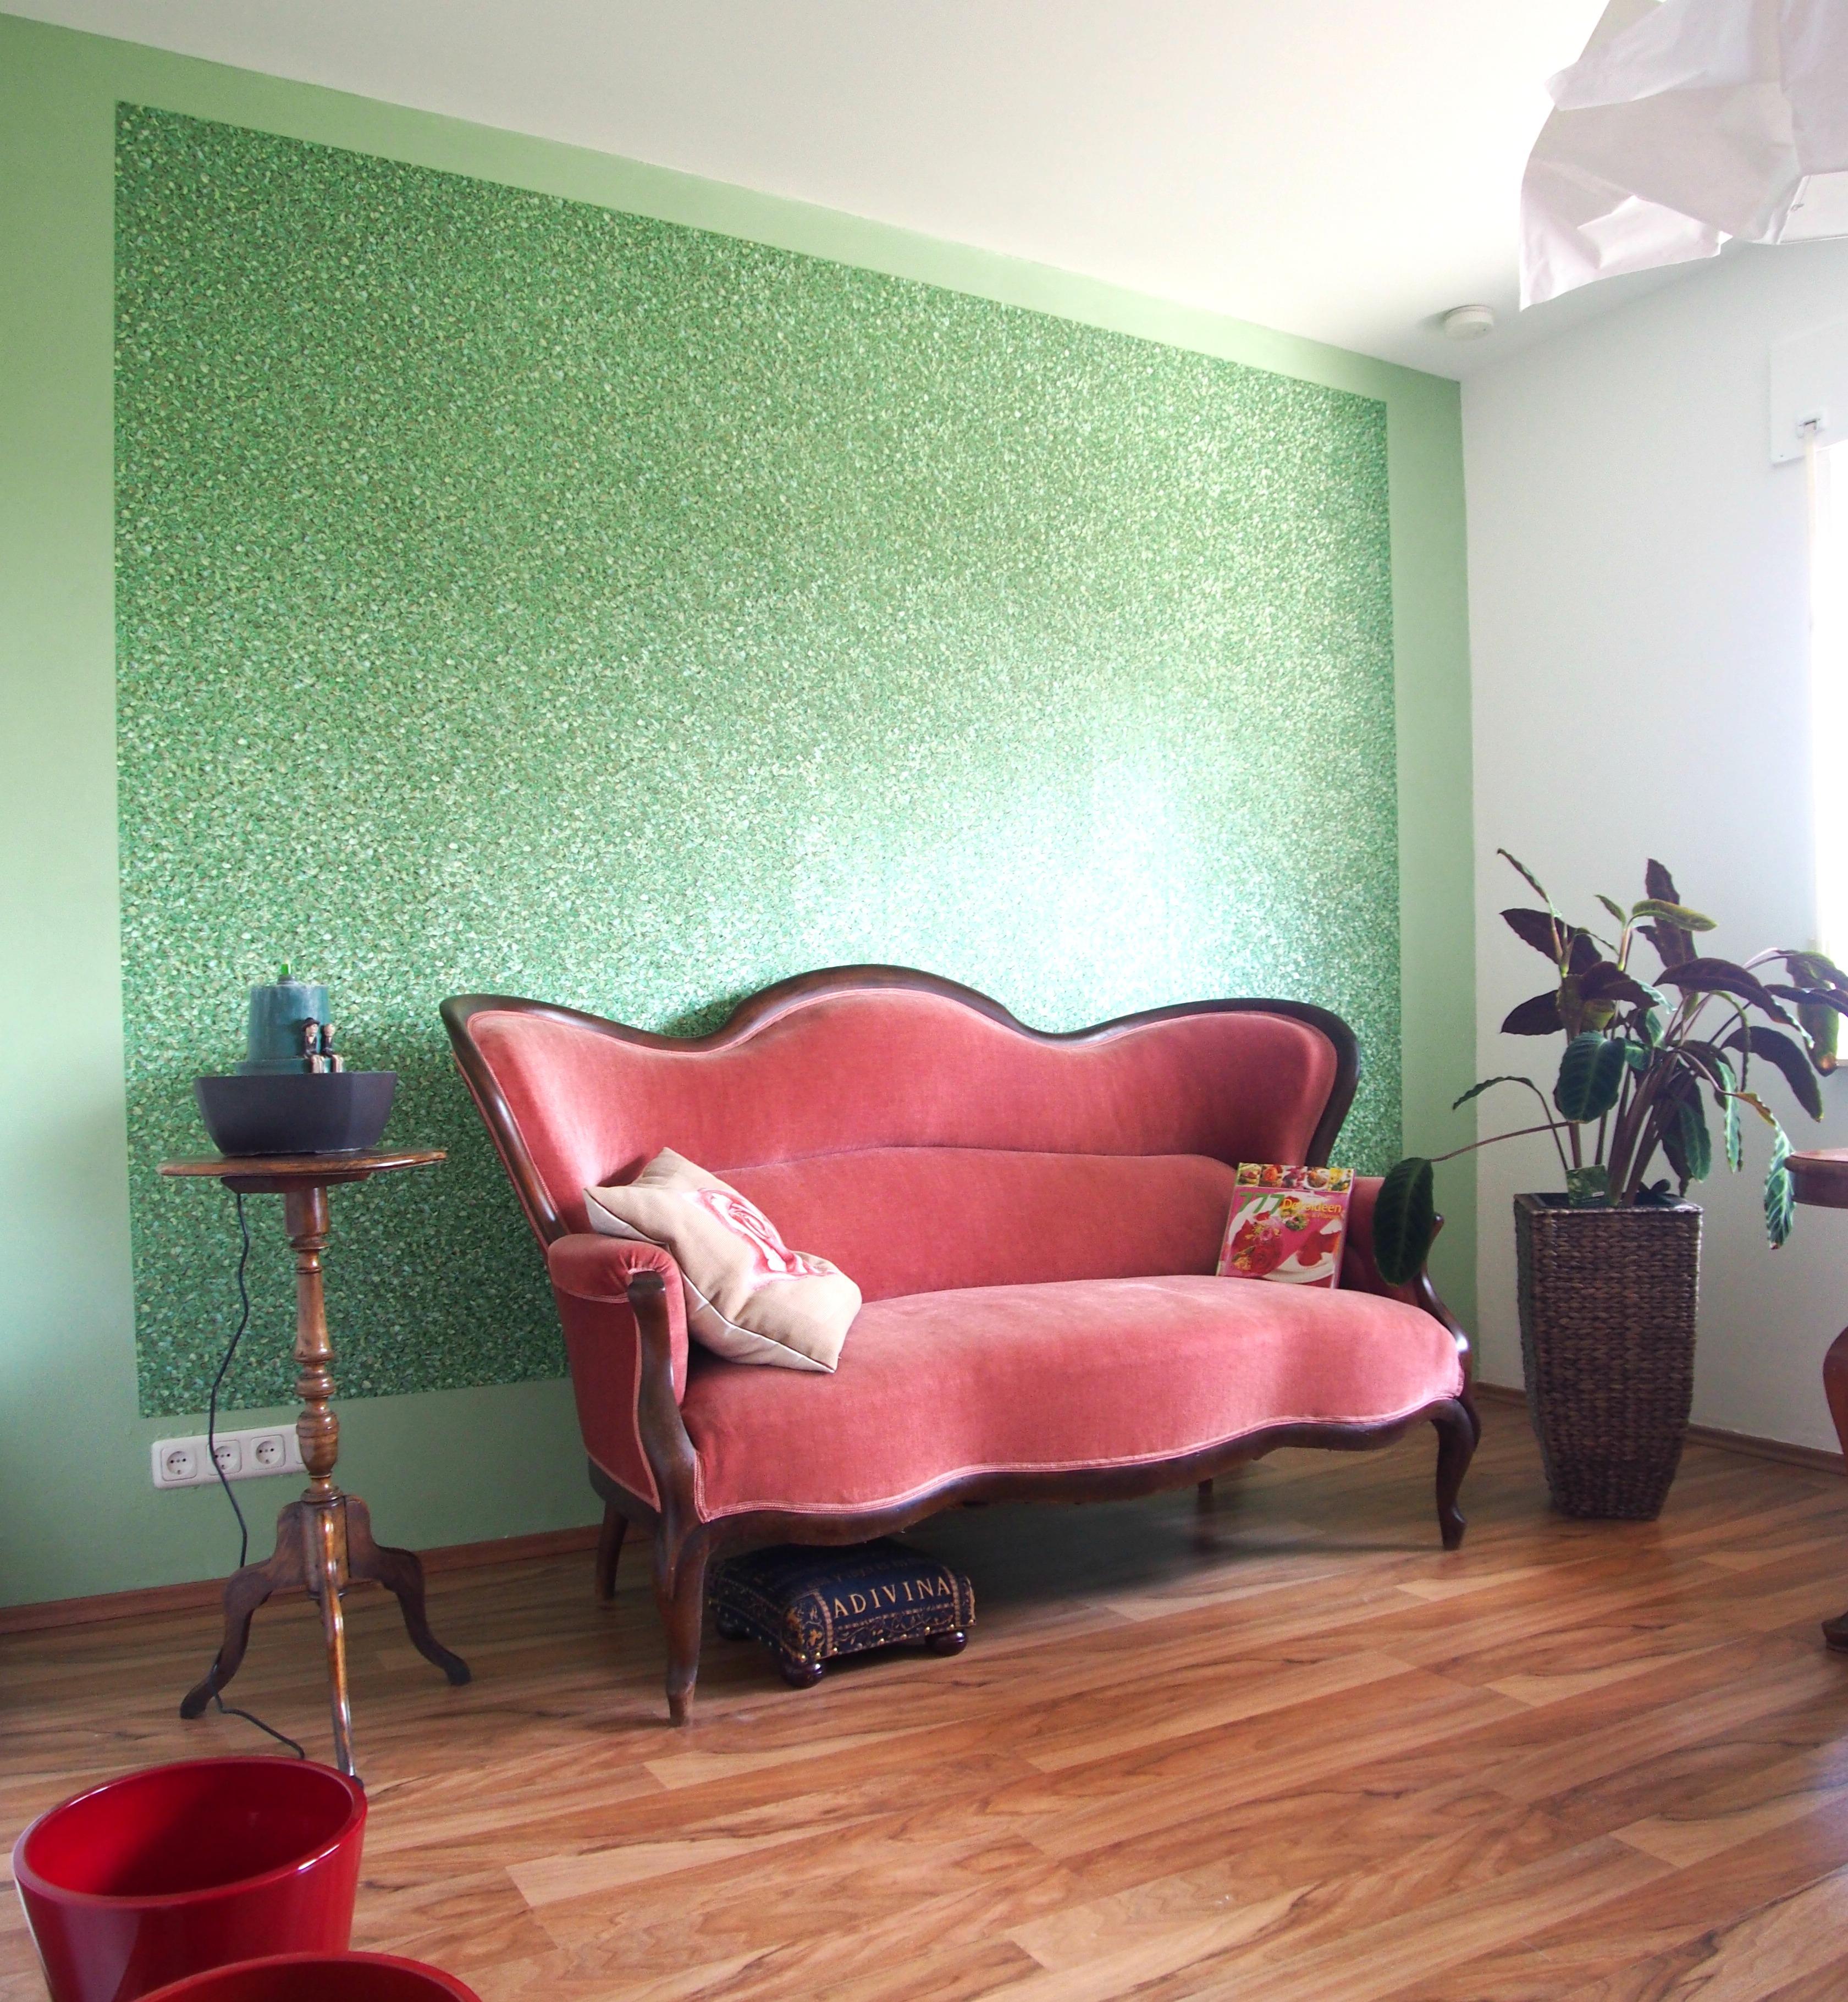 Psychotherapeutische Praxis Zornheim #beistelltisch #sofa #rotessofa #grünewandfarbe ©Yvette Sillo